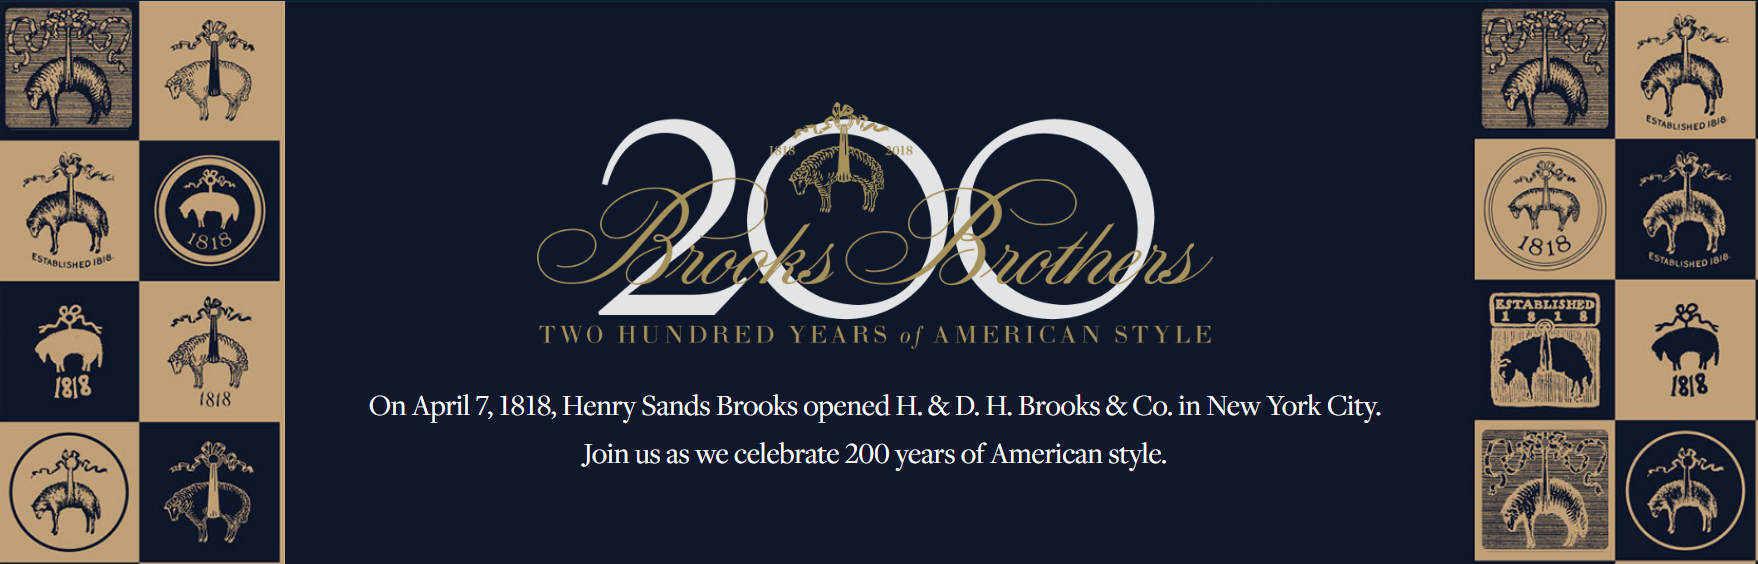 美国经典服饰品牌Brooks Brothers 进一步发力电商 京东旗舰店盛大开幕